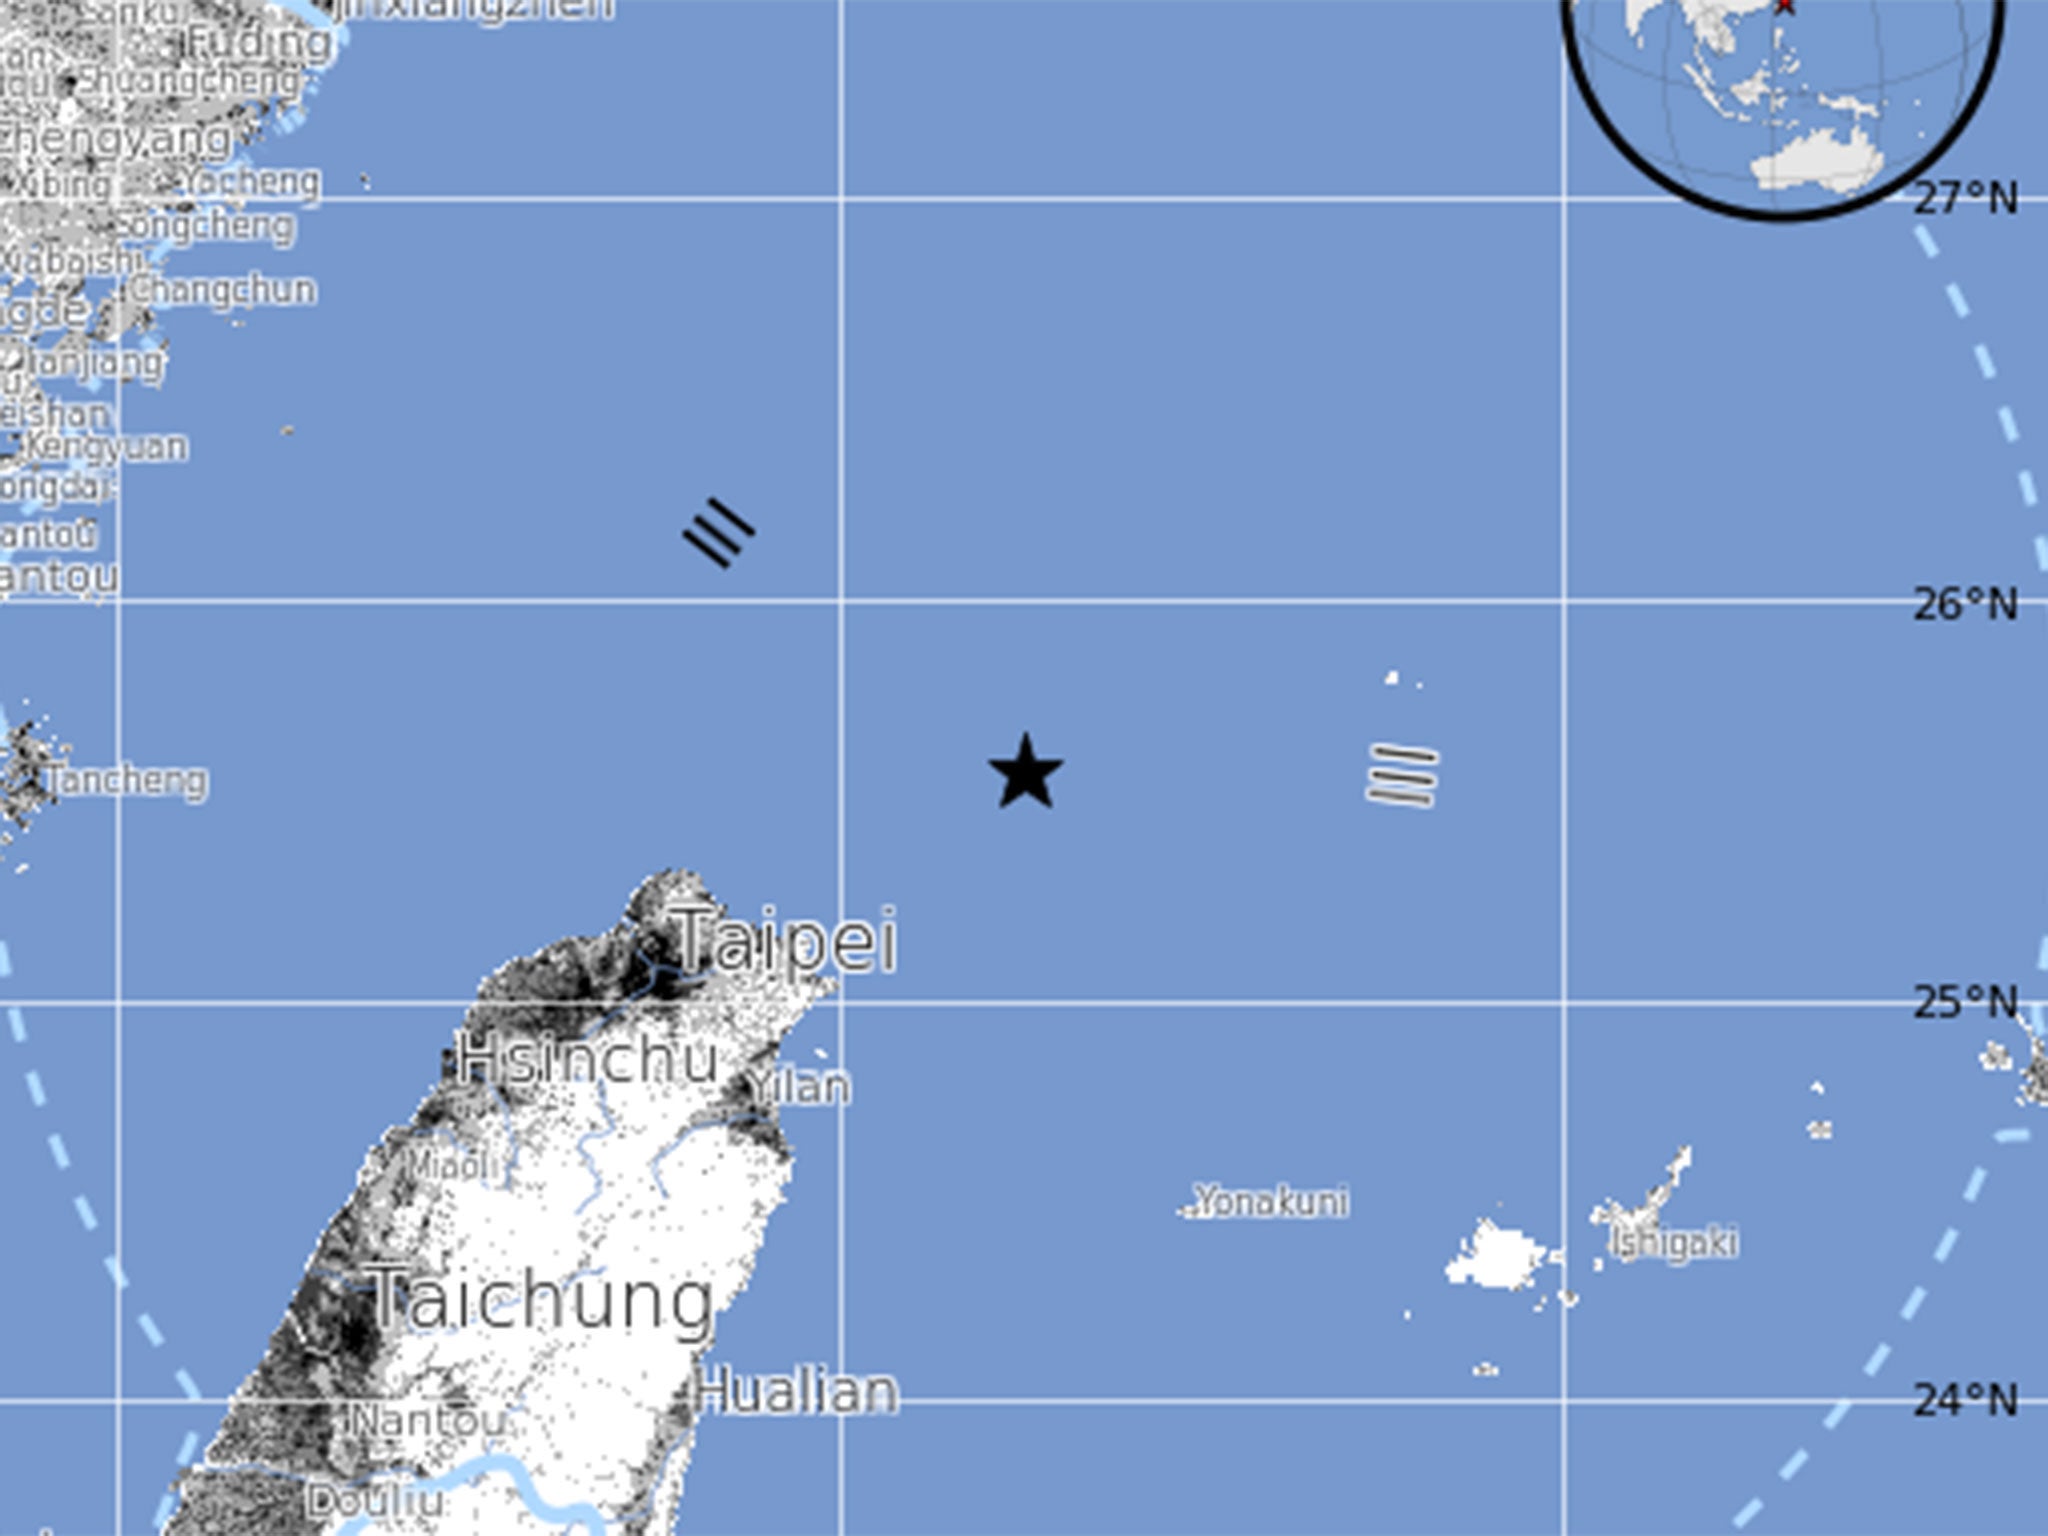 The earthquake struck off the coast near Taipei